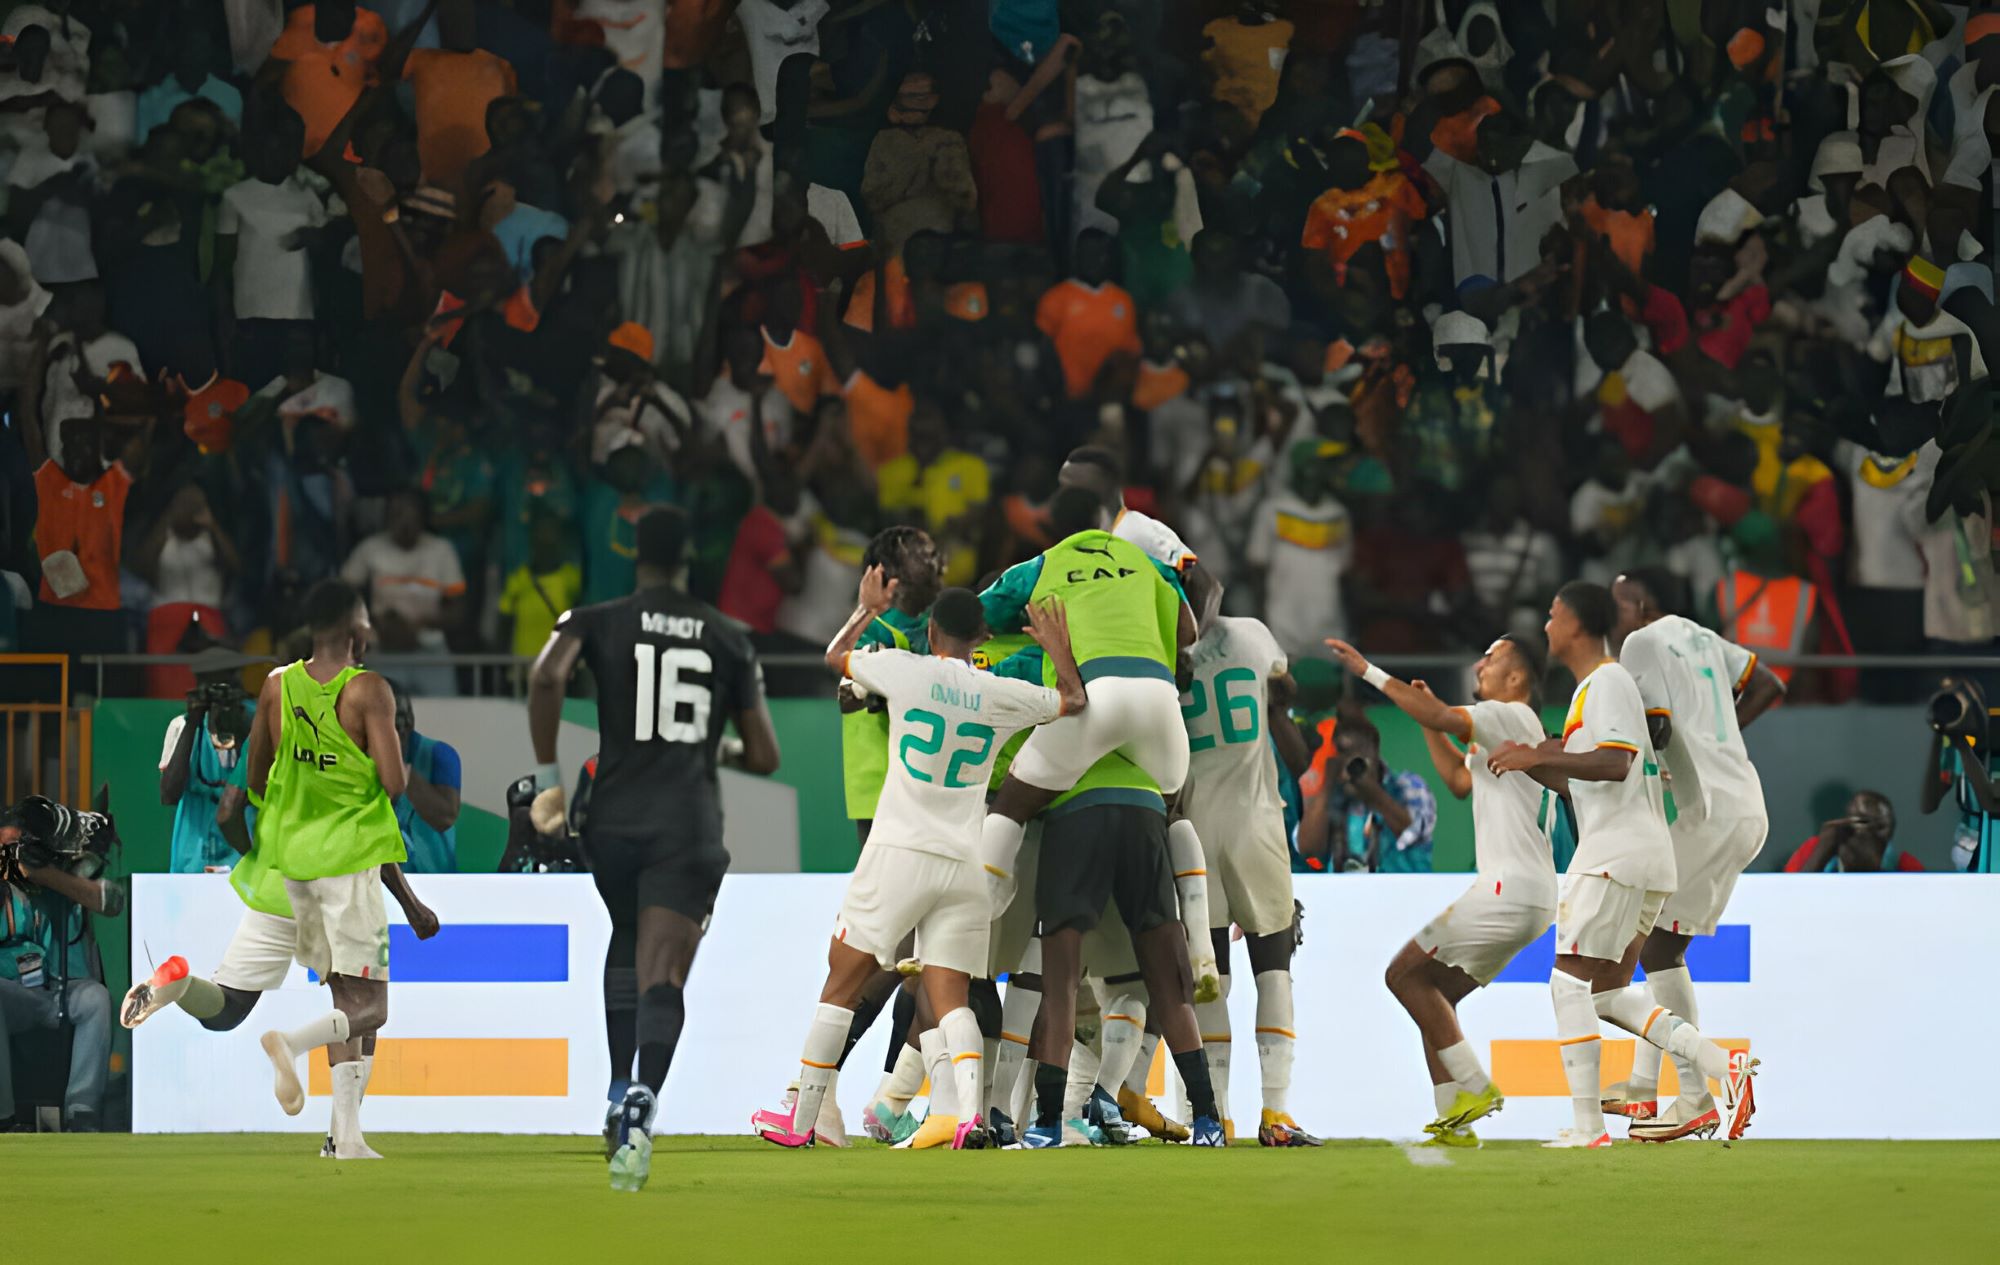 Kết quả bóng đá hôm nay 20/1: Senegal đánh bại Cameroon để đi tiếp - Ảnh 1